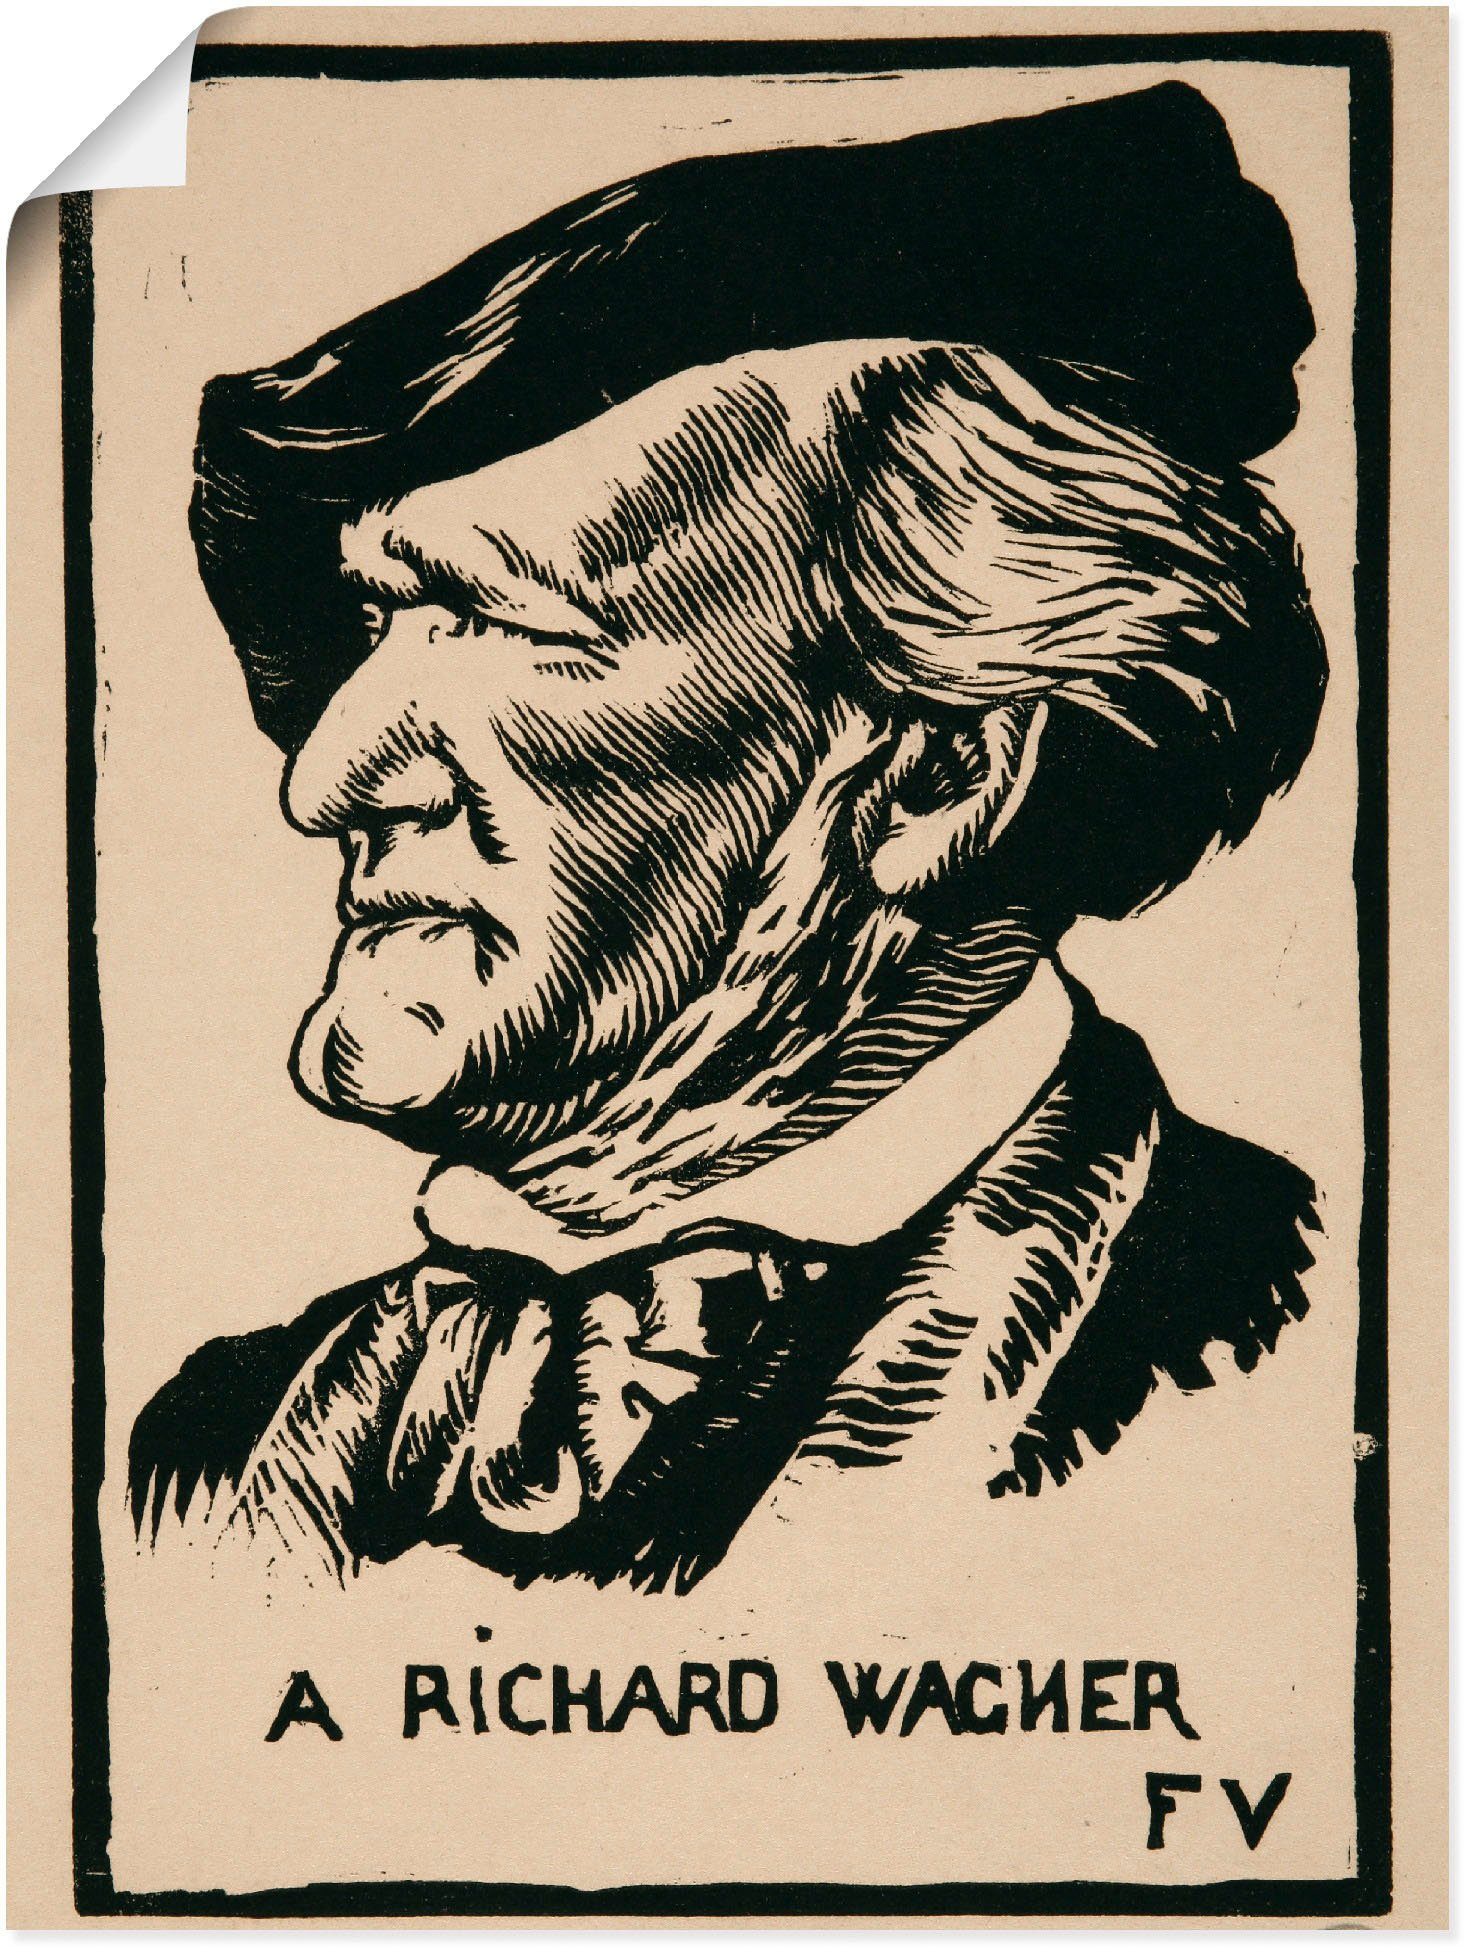 Artland Artprint Een Richard Wagner. 1891 in vele afmetingen & productsoorten -artprint op linnen, poster, muursticker / wandfolie ook geschikt voor de badkamer (1 stuk)